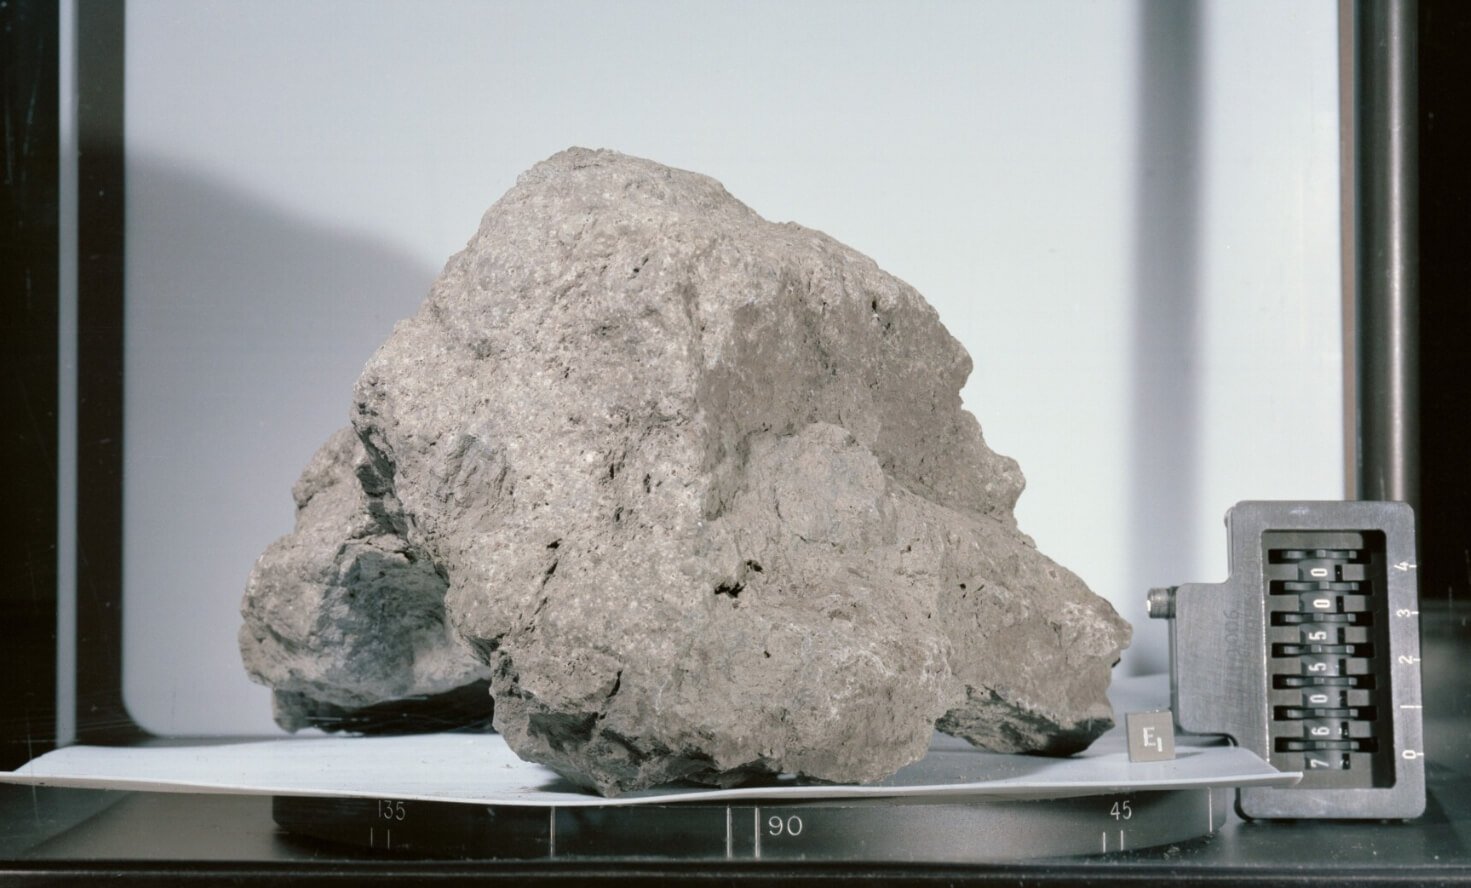 Добыча и изучение лунного грунта. Образец лунного грунта, добытый в рамках миссии «Аполлон». Источник: fishki.net. Фото.